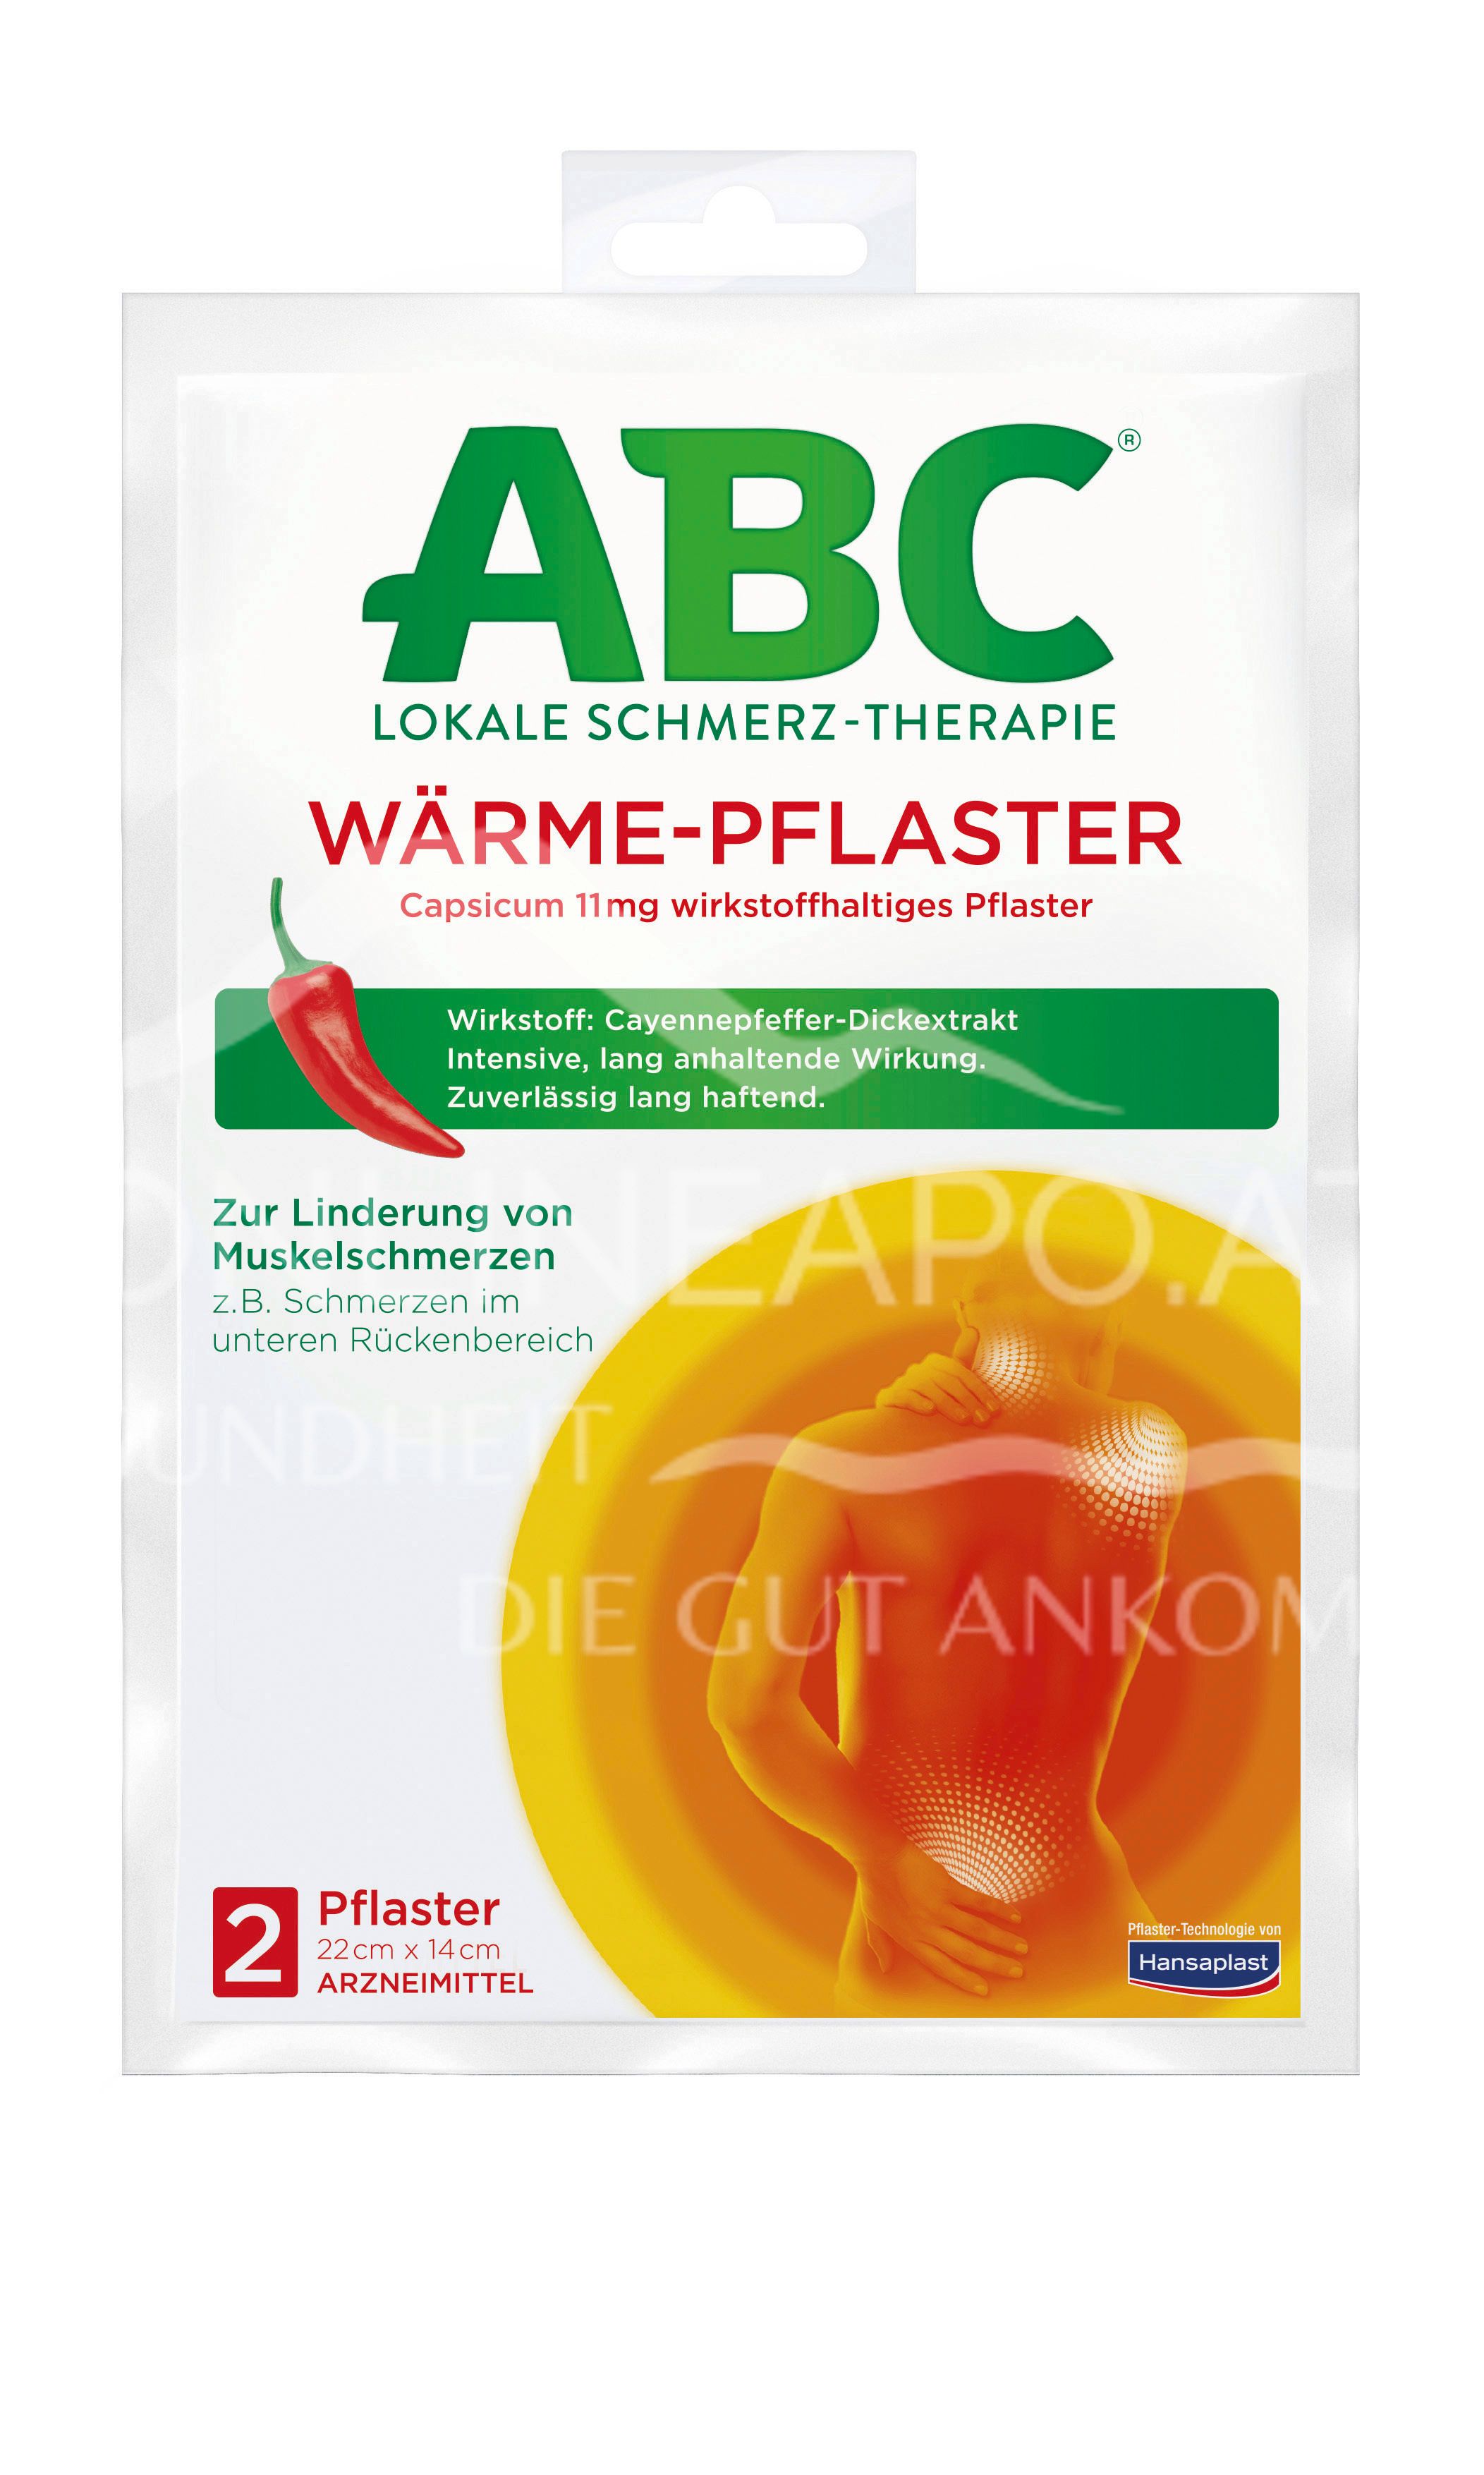  ABC Wärme-Pflaster Capsicum